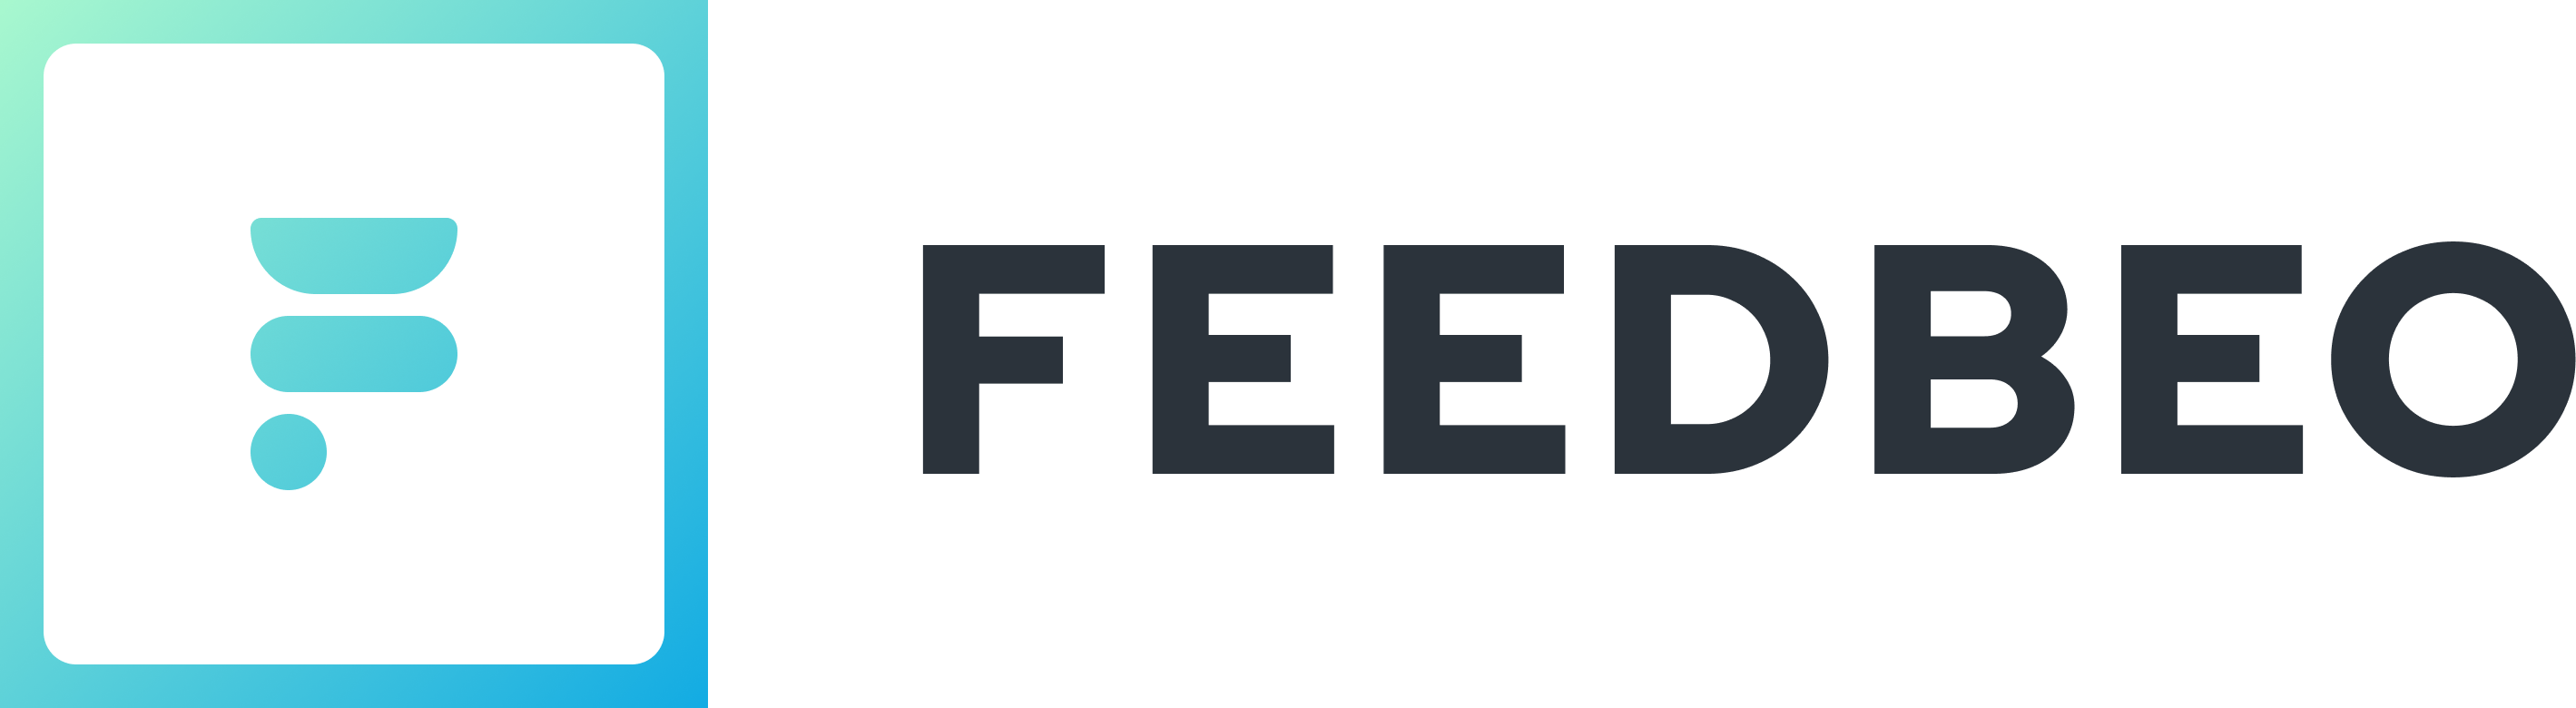 feedbeo-logo-prealoder